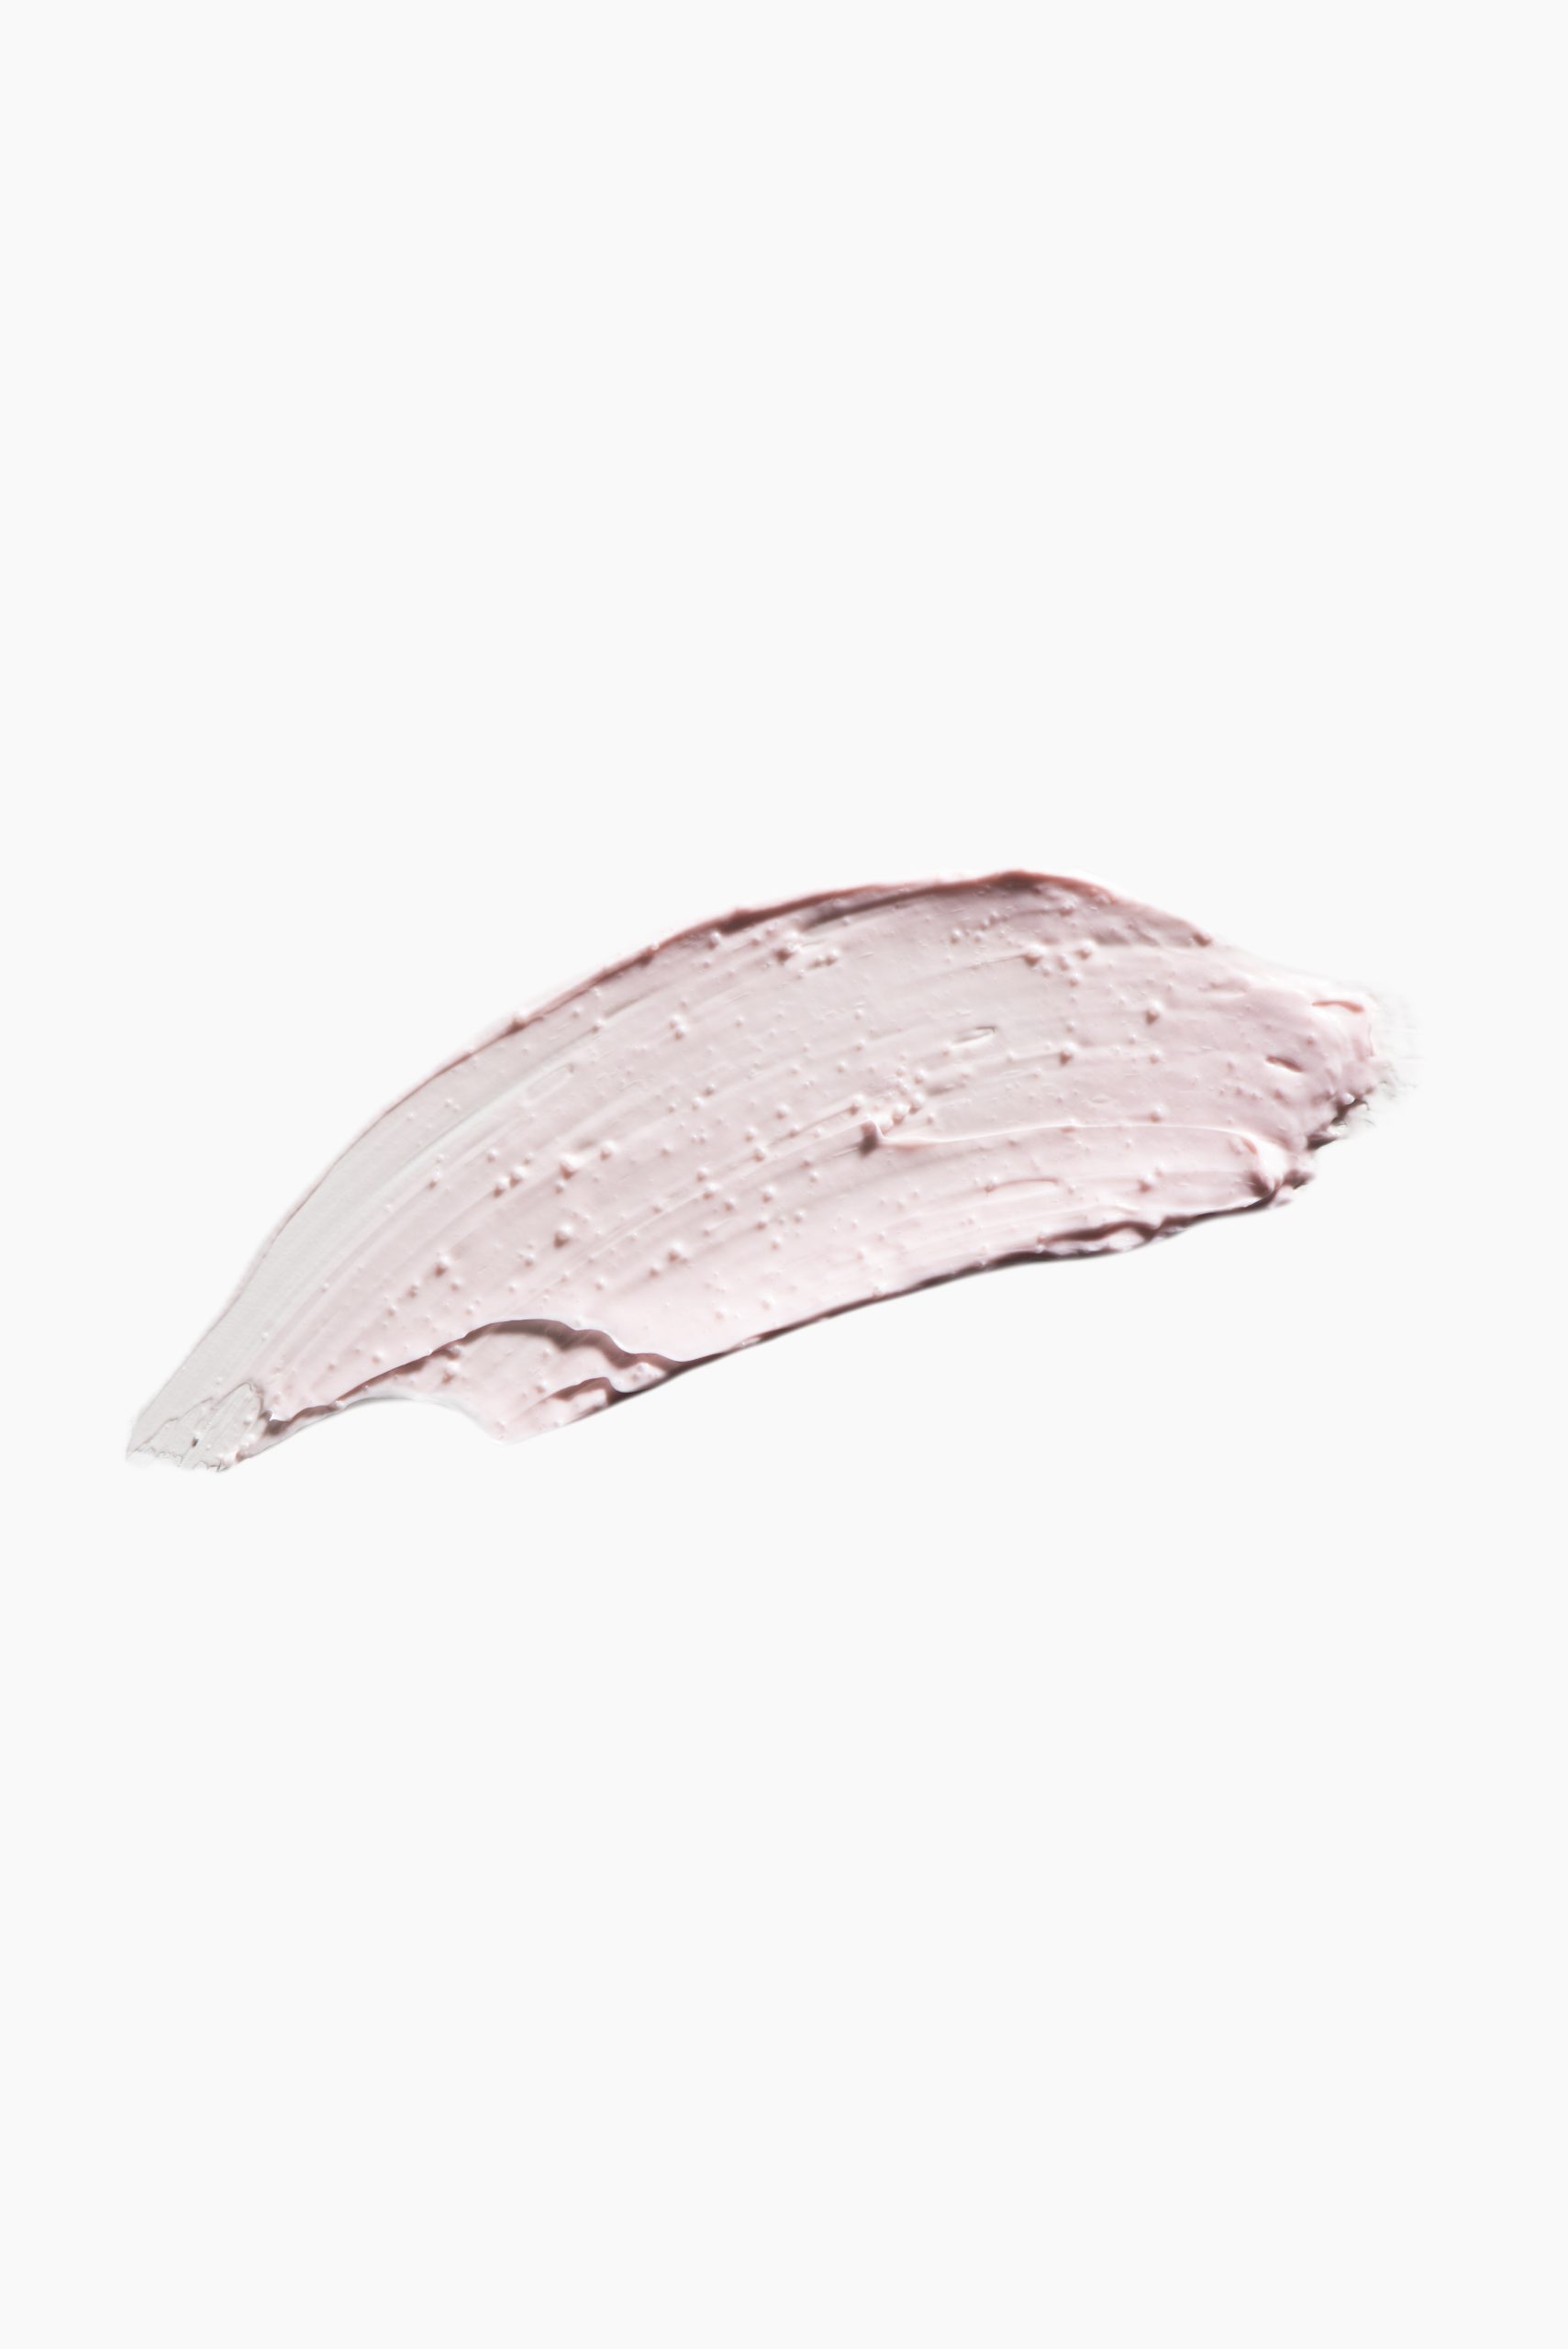 1+1 MUDMASKY® - Masque à l'argile rose Vernis Pearl Masque à l'argile Pink  Superglow